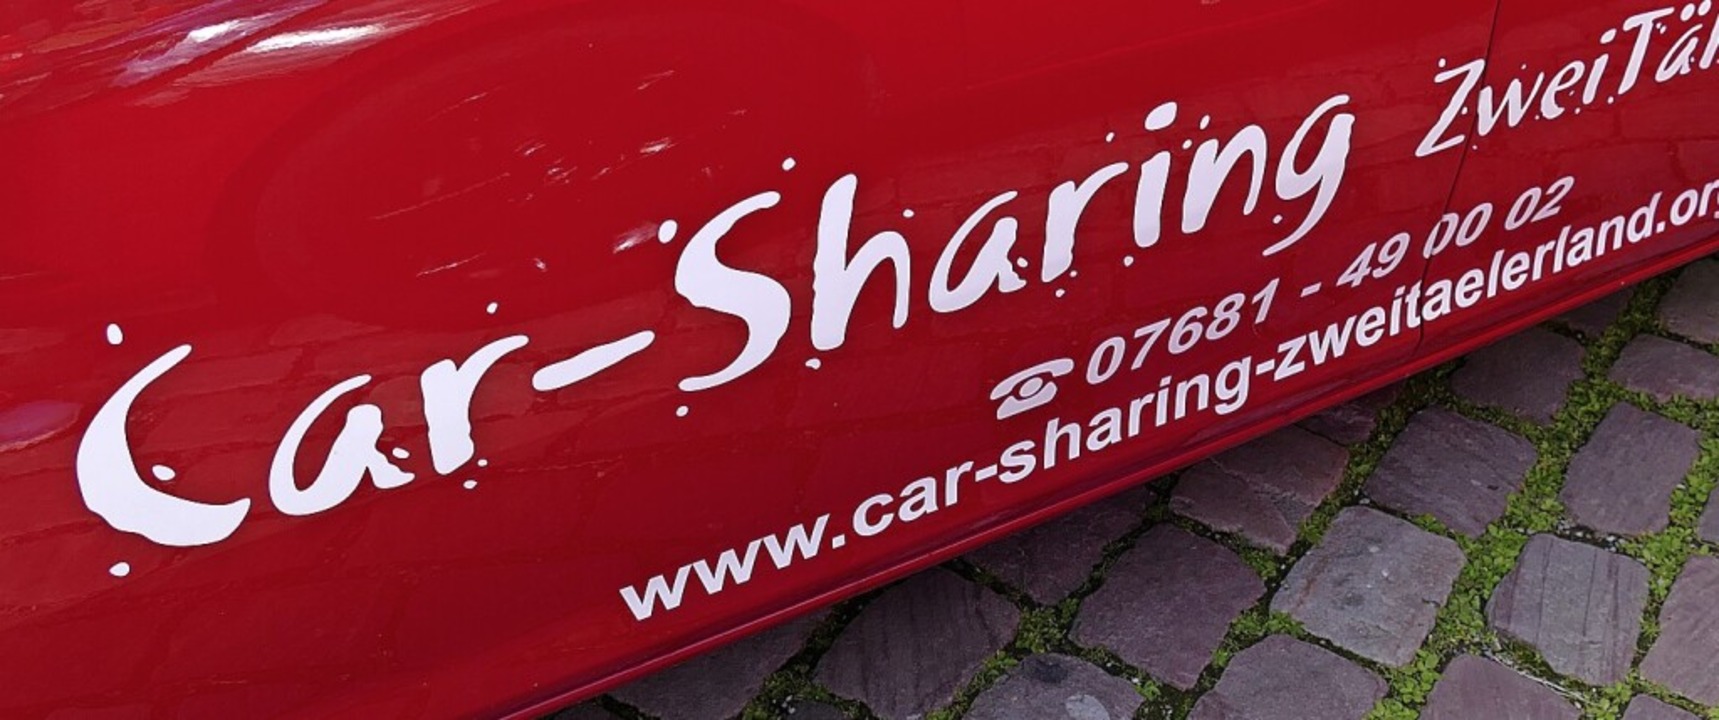 Noch sind die Nutzungsgebührend beim Car-Sharing-Verein Zweitälerland stabil.  | Foto: Verein